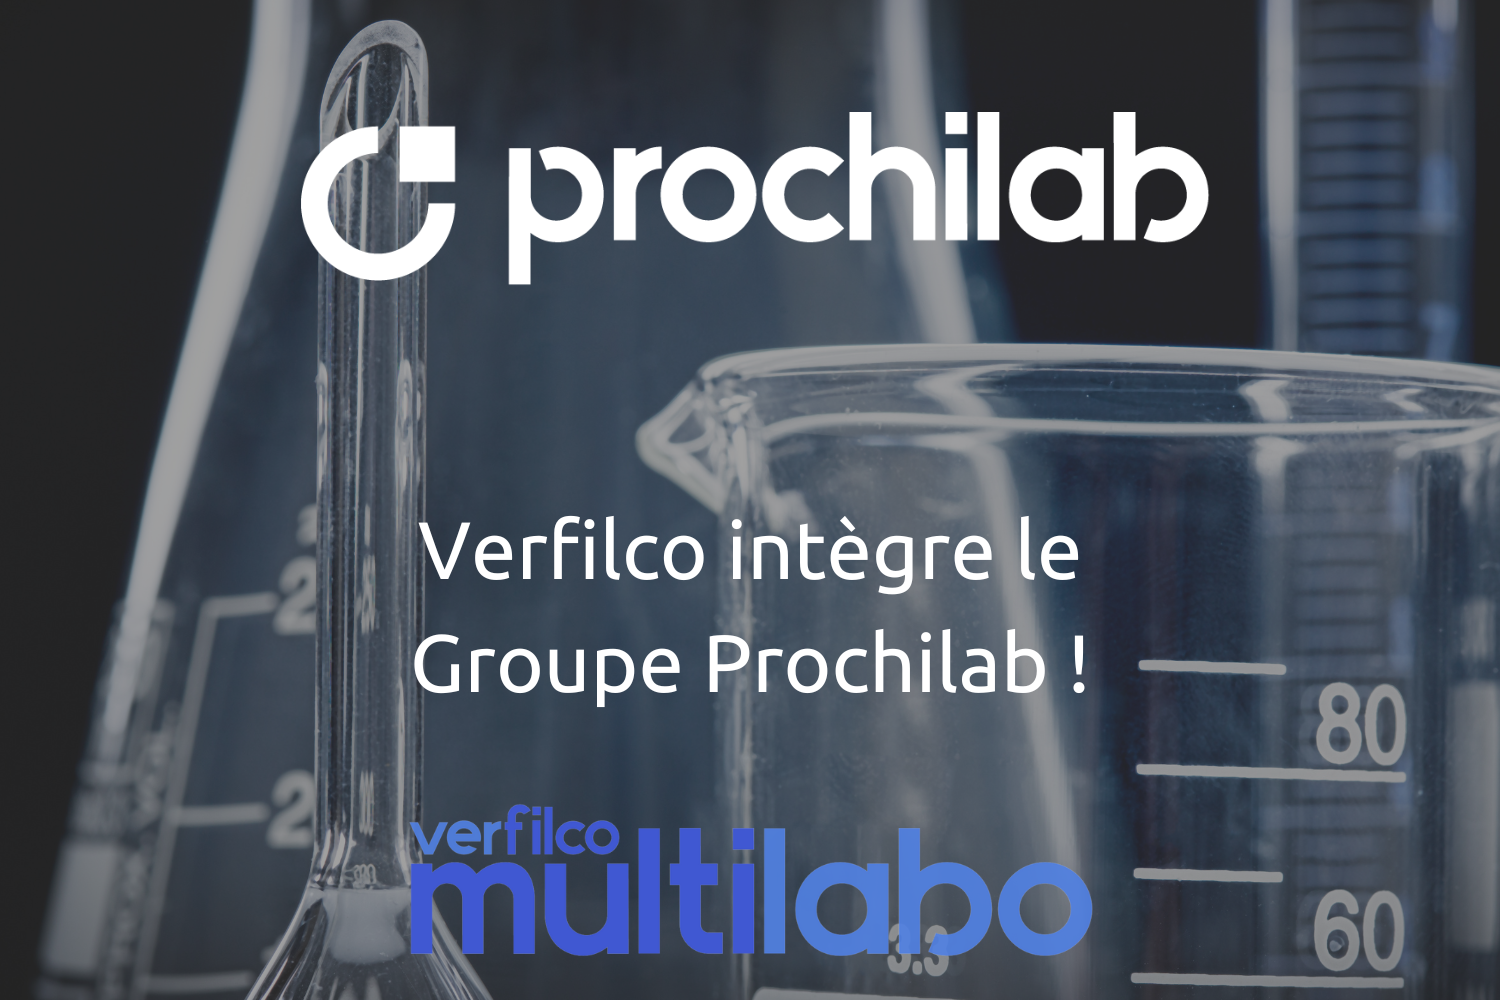 Verfilco intègre le Groupe Prochilab!